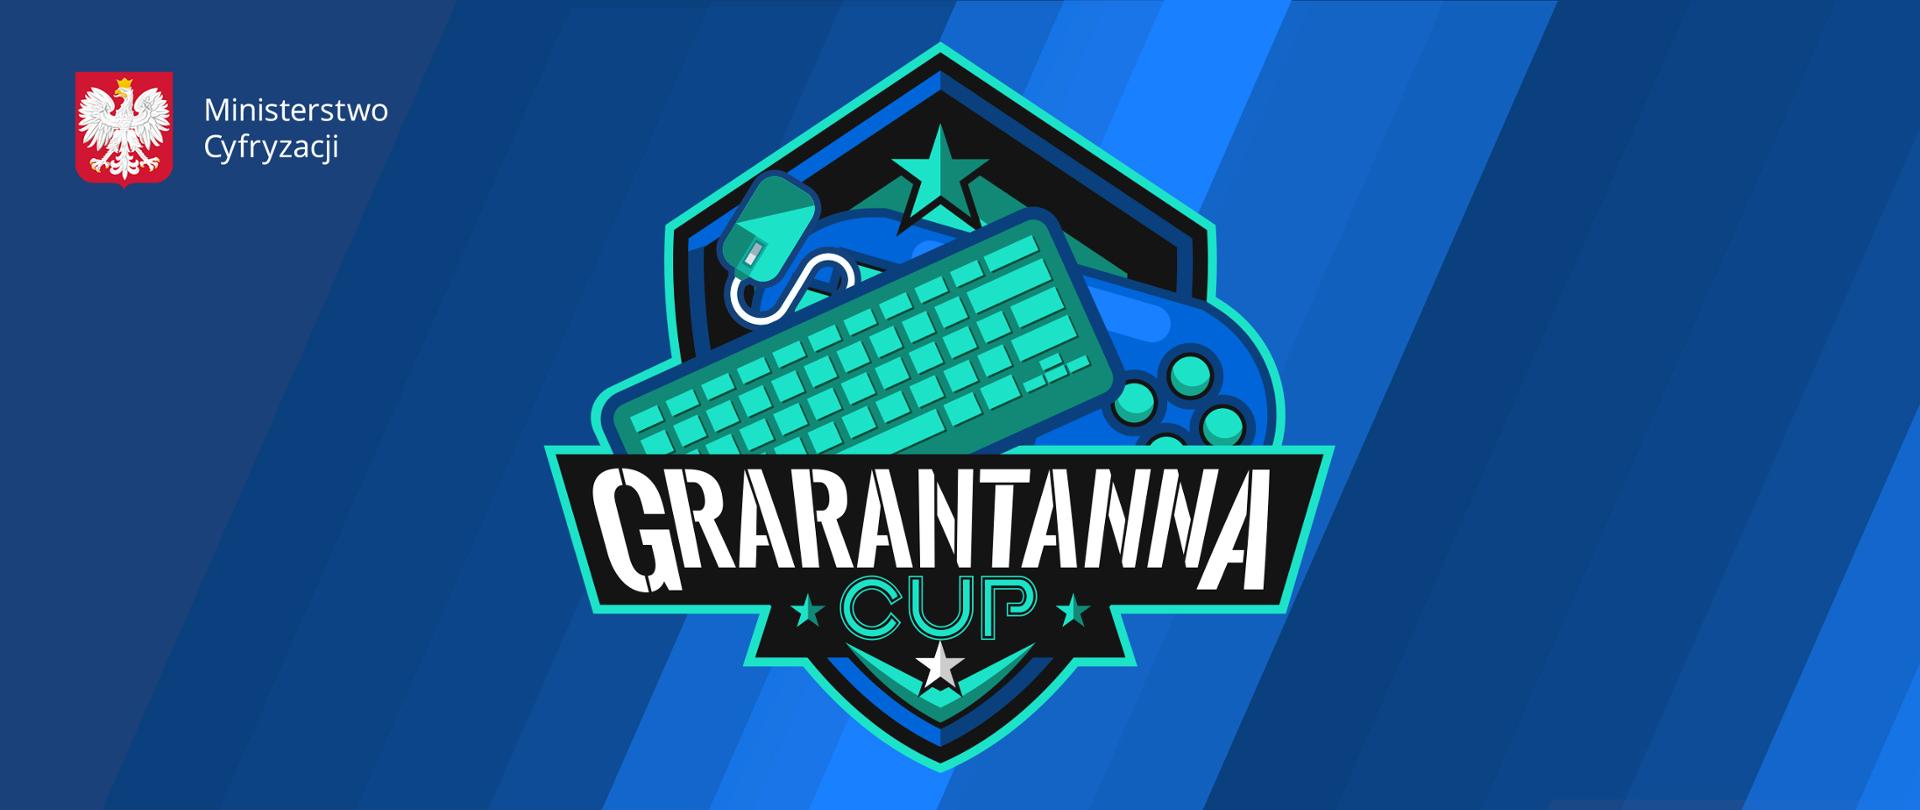 Logotyp wydarzenia. Napis Grarantanna Cup. W logo klawiatura, myszka, pad. Urządzenia leżą jedno na drugim. Tło niebieskie - skośne paski w różnych odcieniach. W lewym górnym rogu - logo ministerstwa.